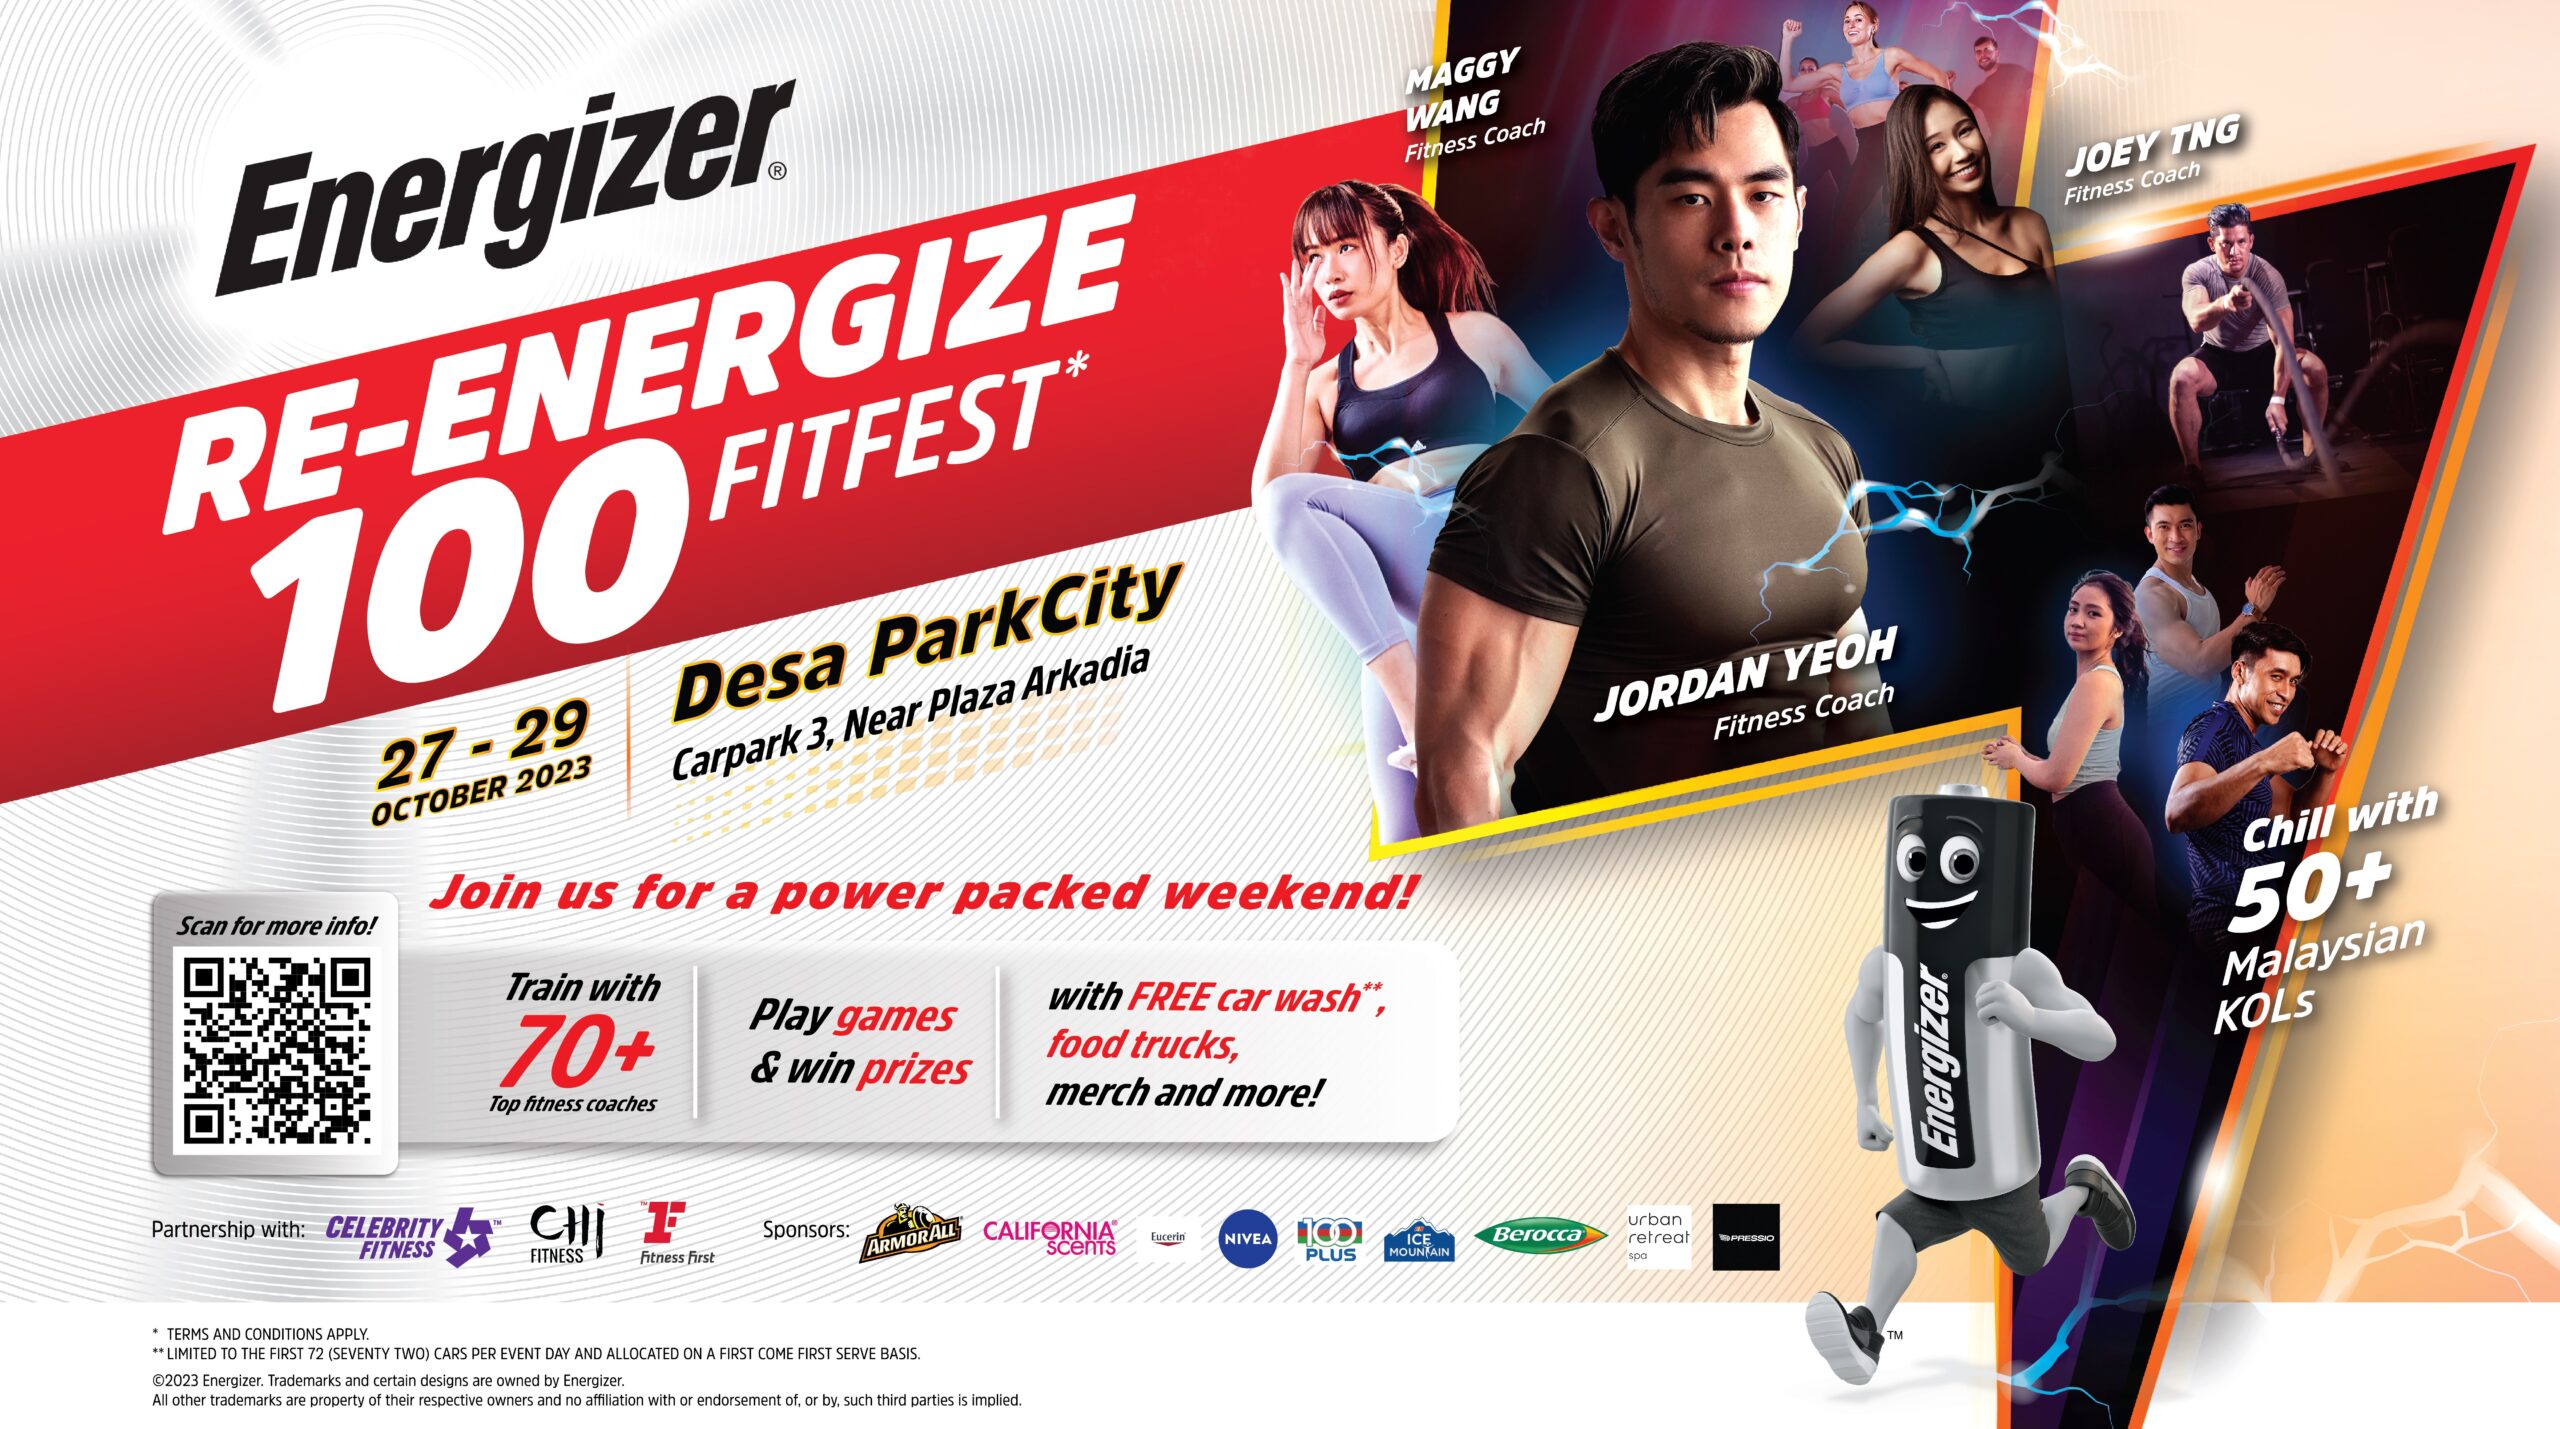 Raikan kesihatan dengan Energizer Re-Energize 100% Fitfest!